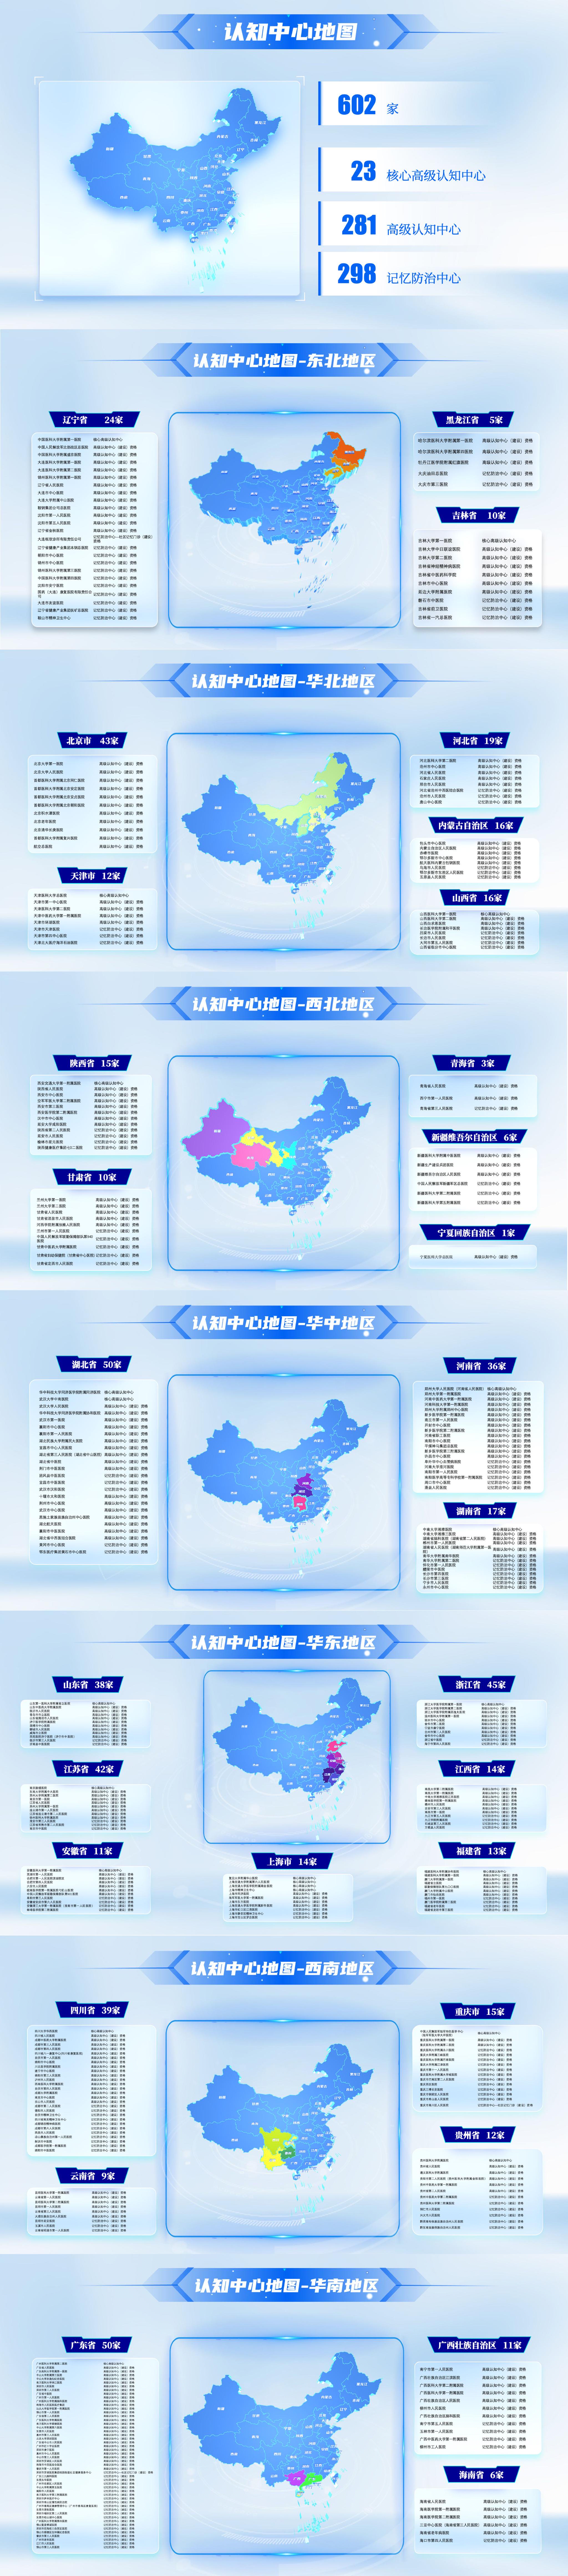 中国地图竖屏壁纸图片